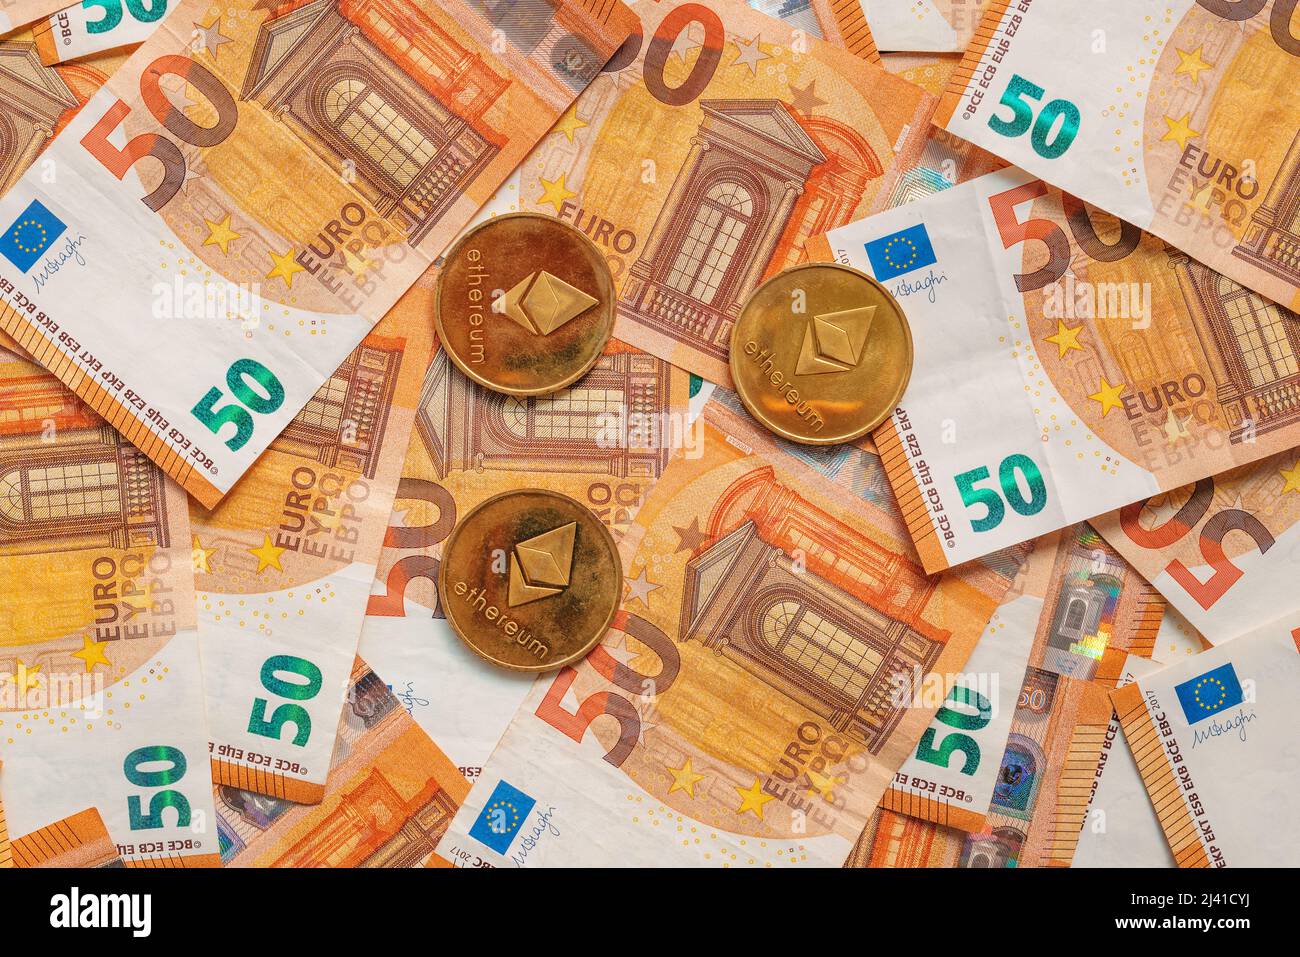 Ethereum monete e banconote in euro per cambio valuta concetto, vista dall'alto Foto Stock